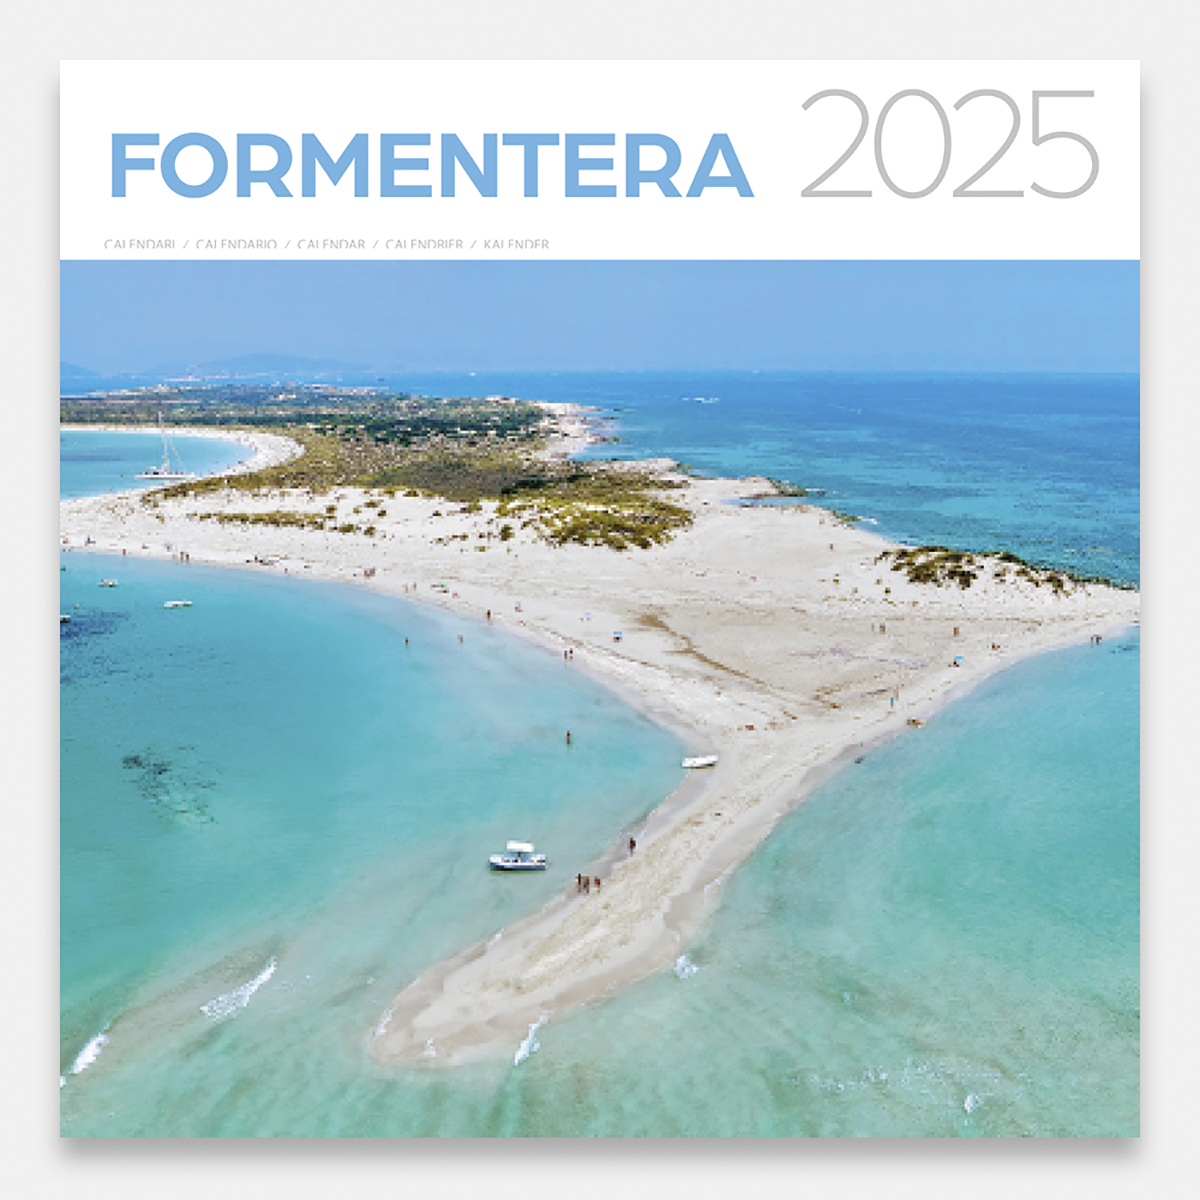 Calendar 2025 Formentera 25forg calendario pared 2025 formentera